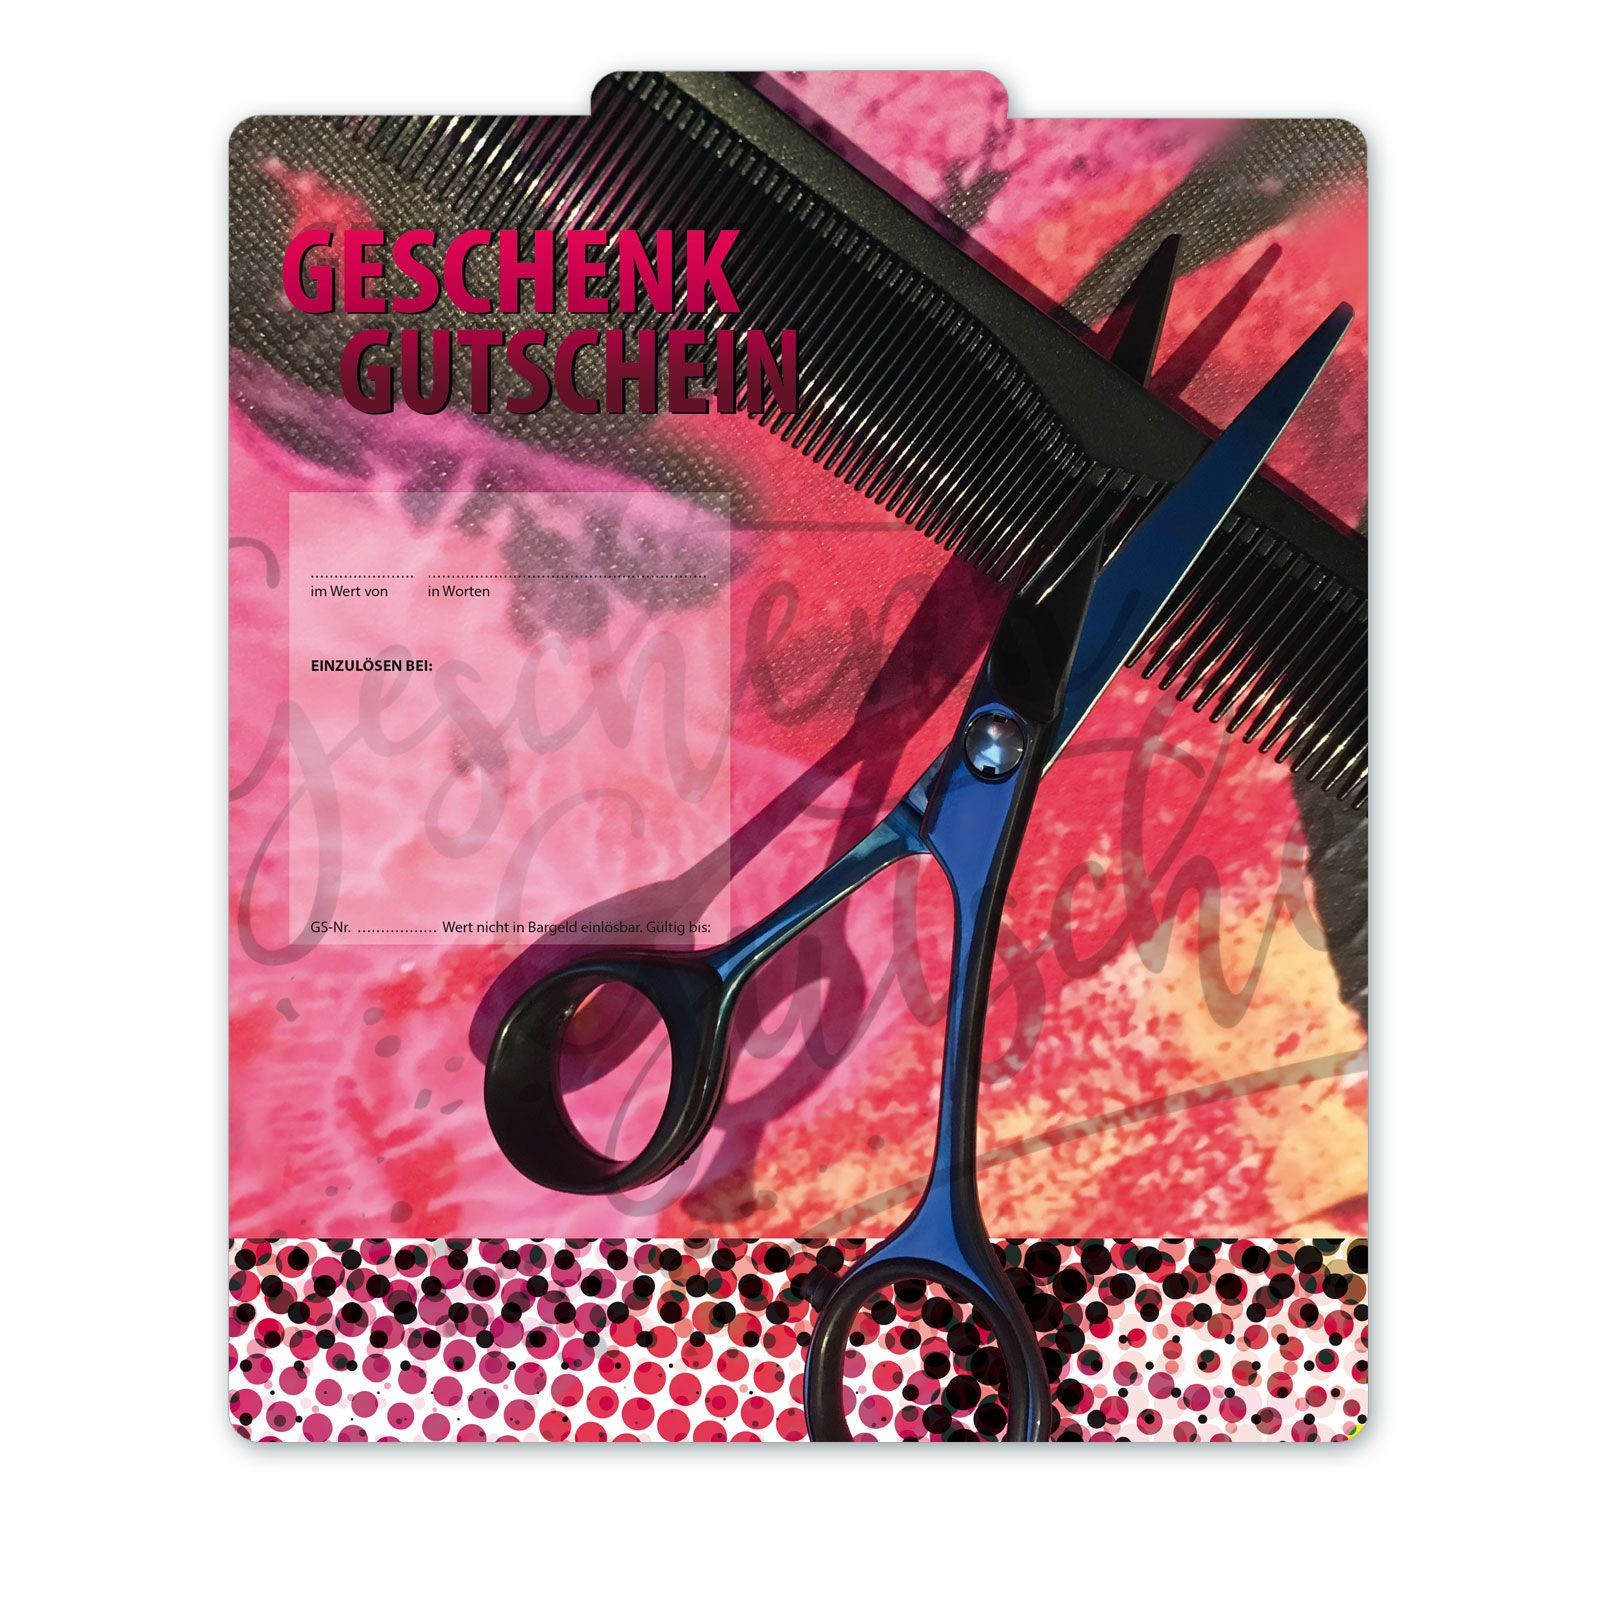 Geschenke Für Friseure
 Gutschein für Friseure K289